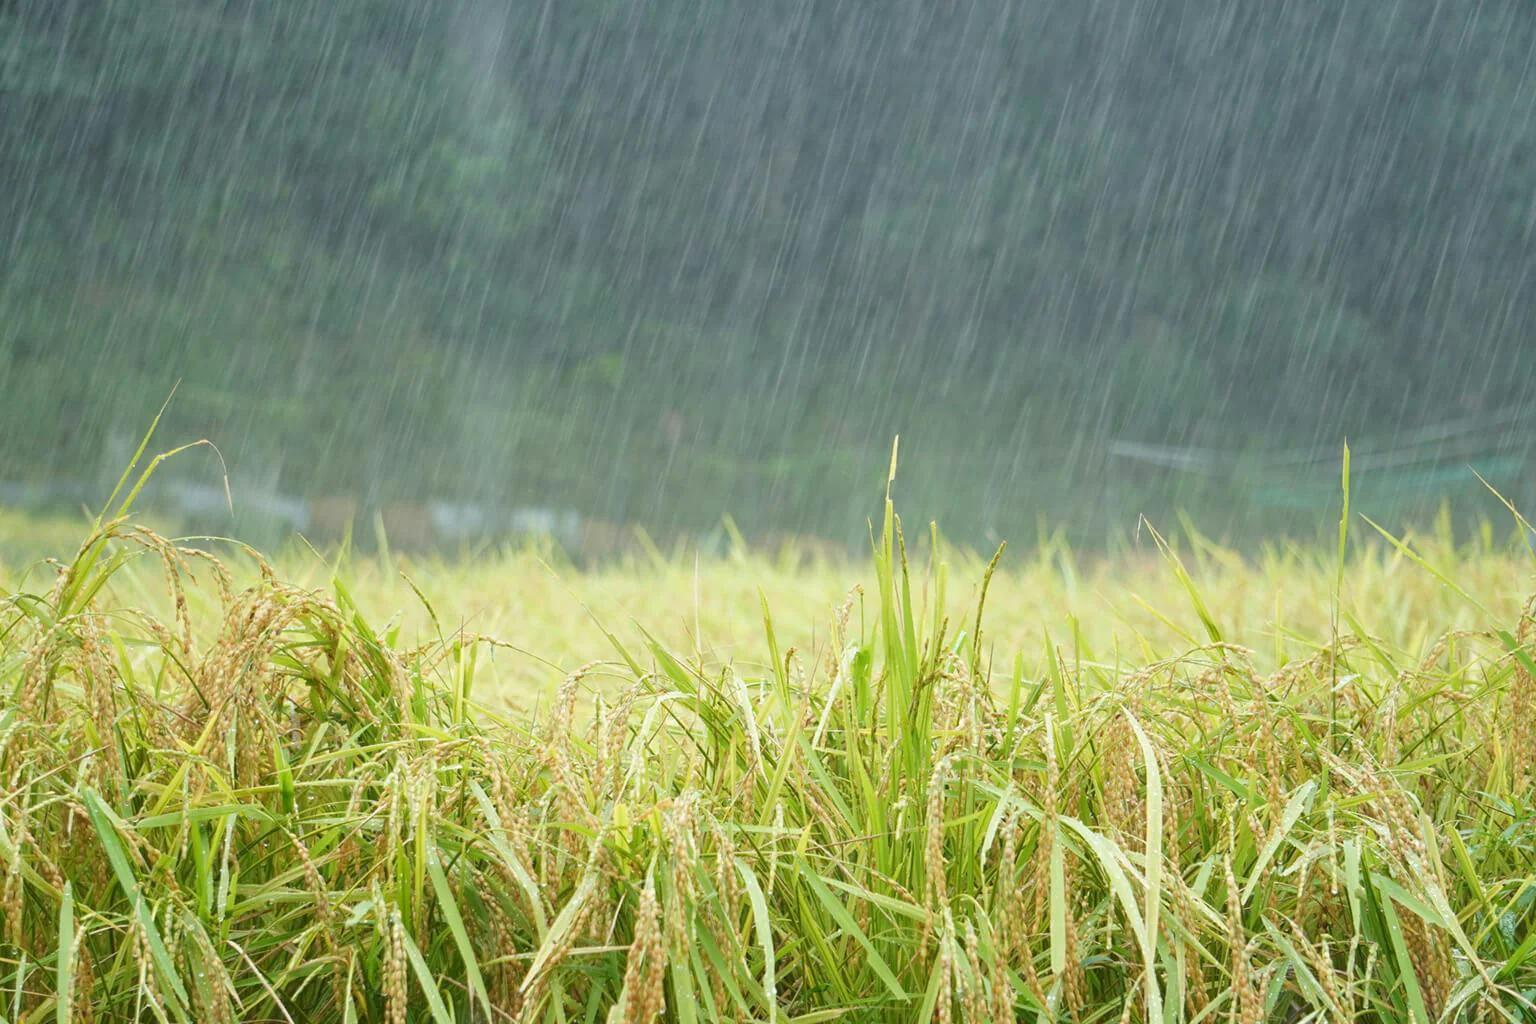 A rainy rice field.